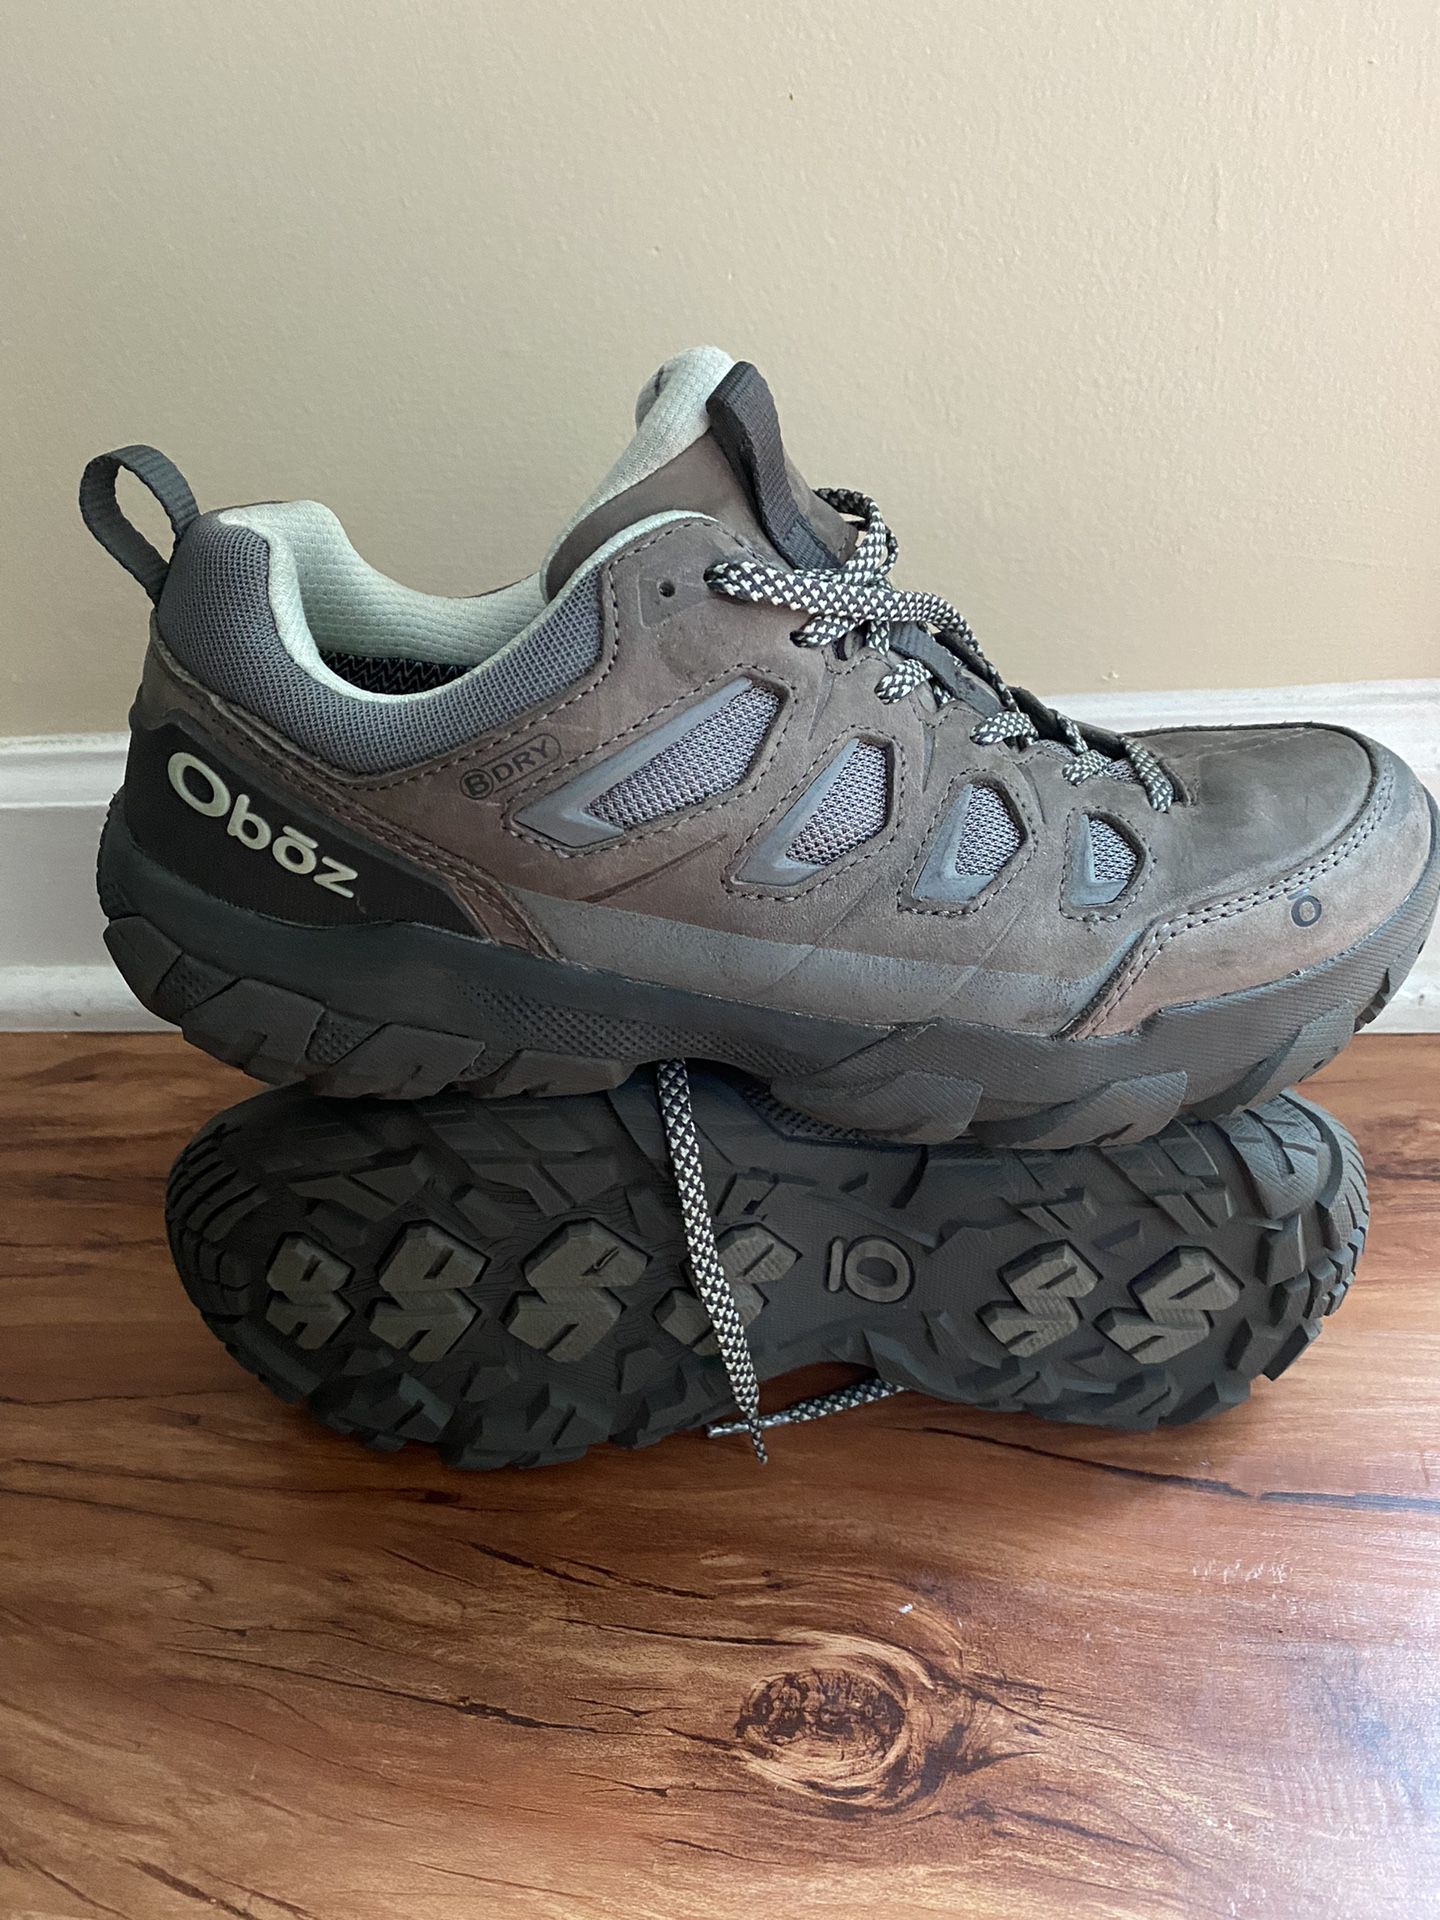 Oboz Women’s Size 8.5 Hiking Athletic Shoe